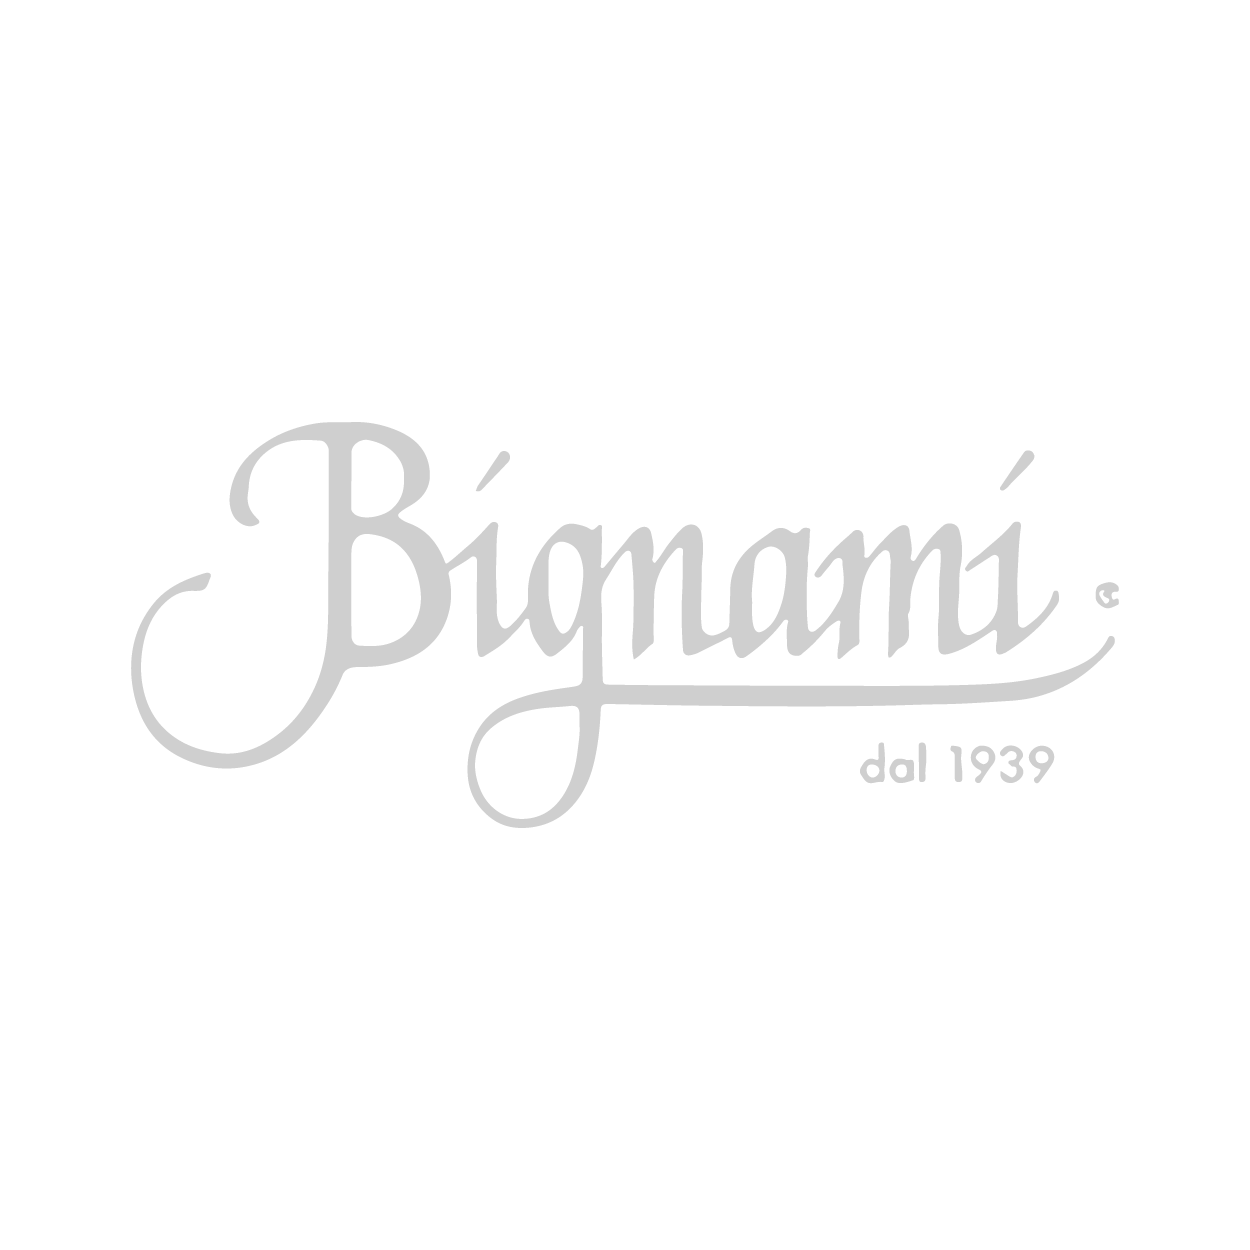 Bignami